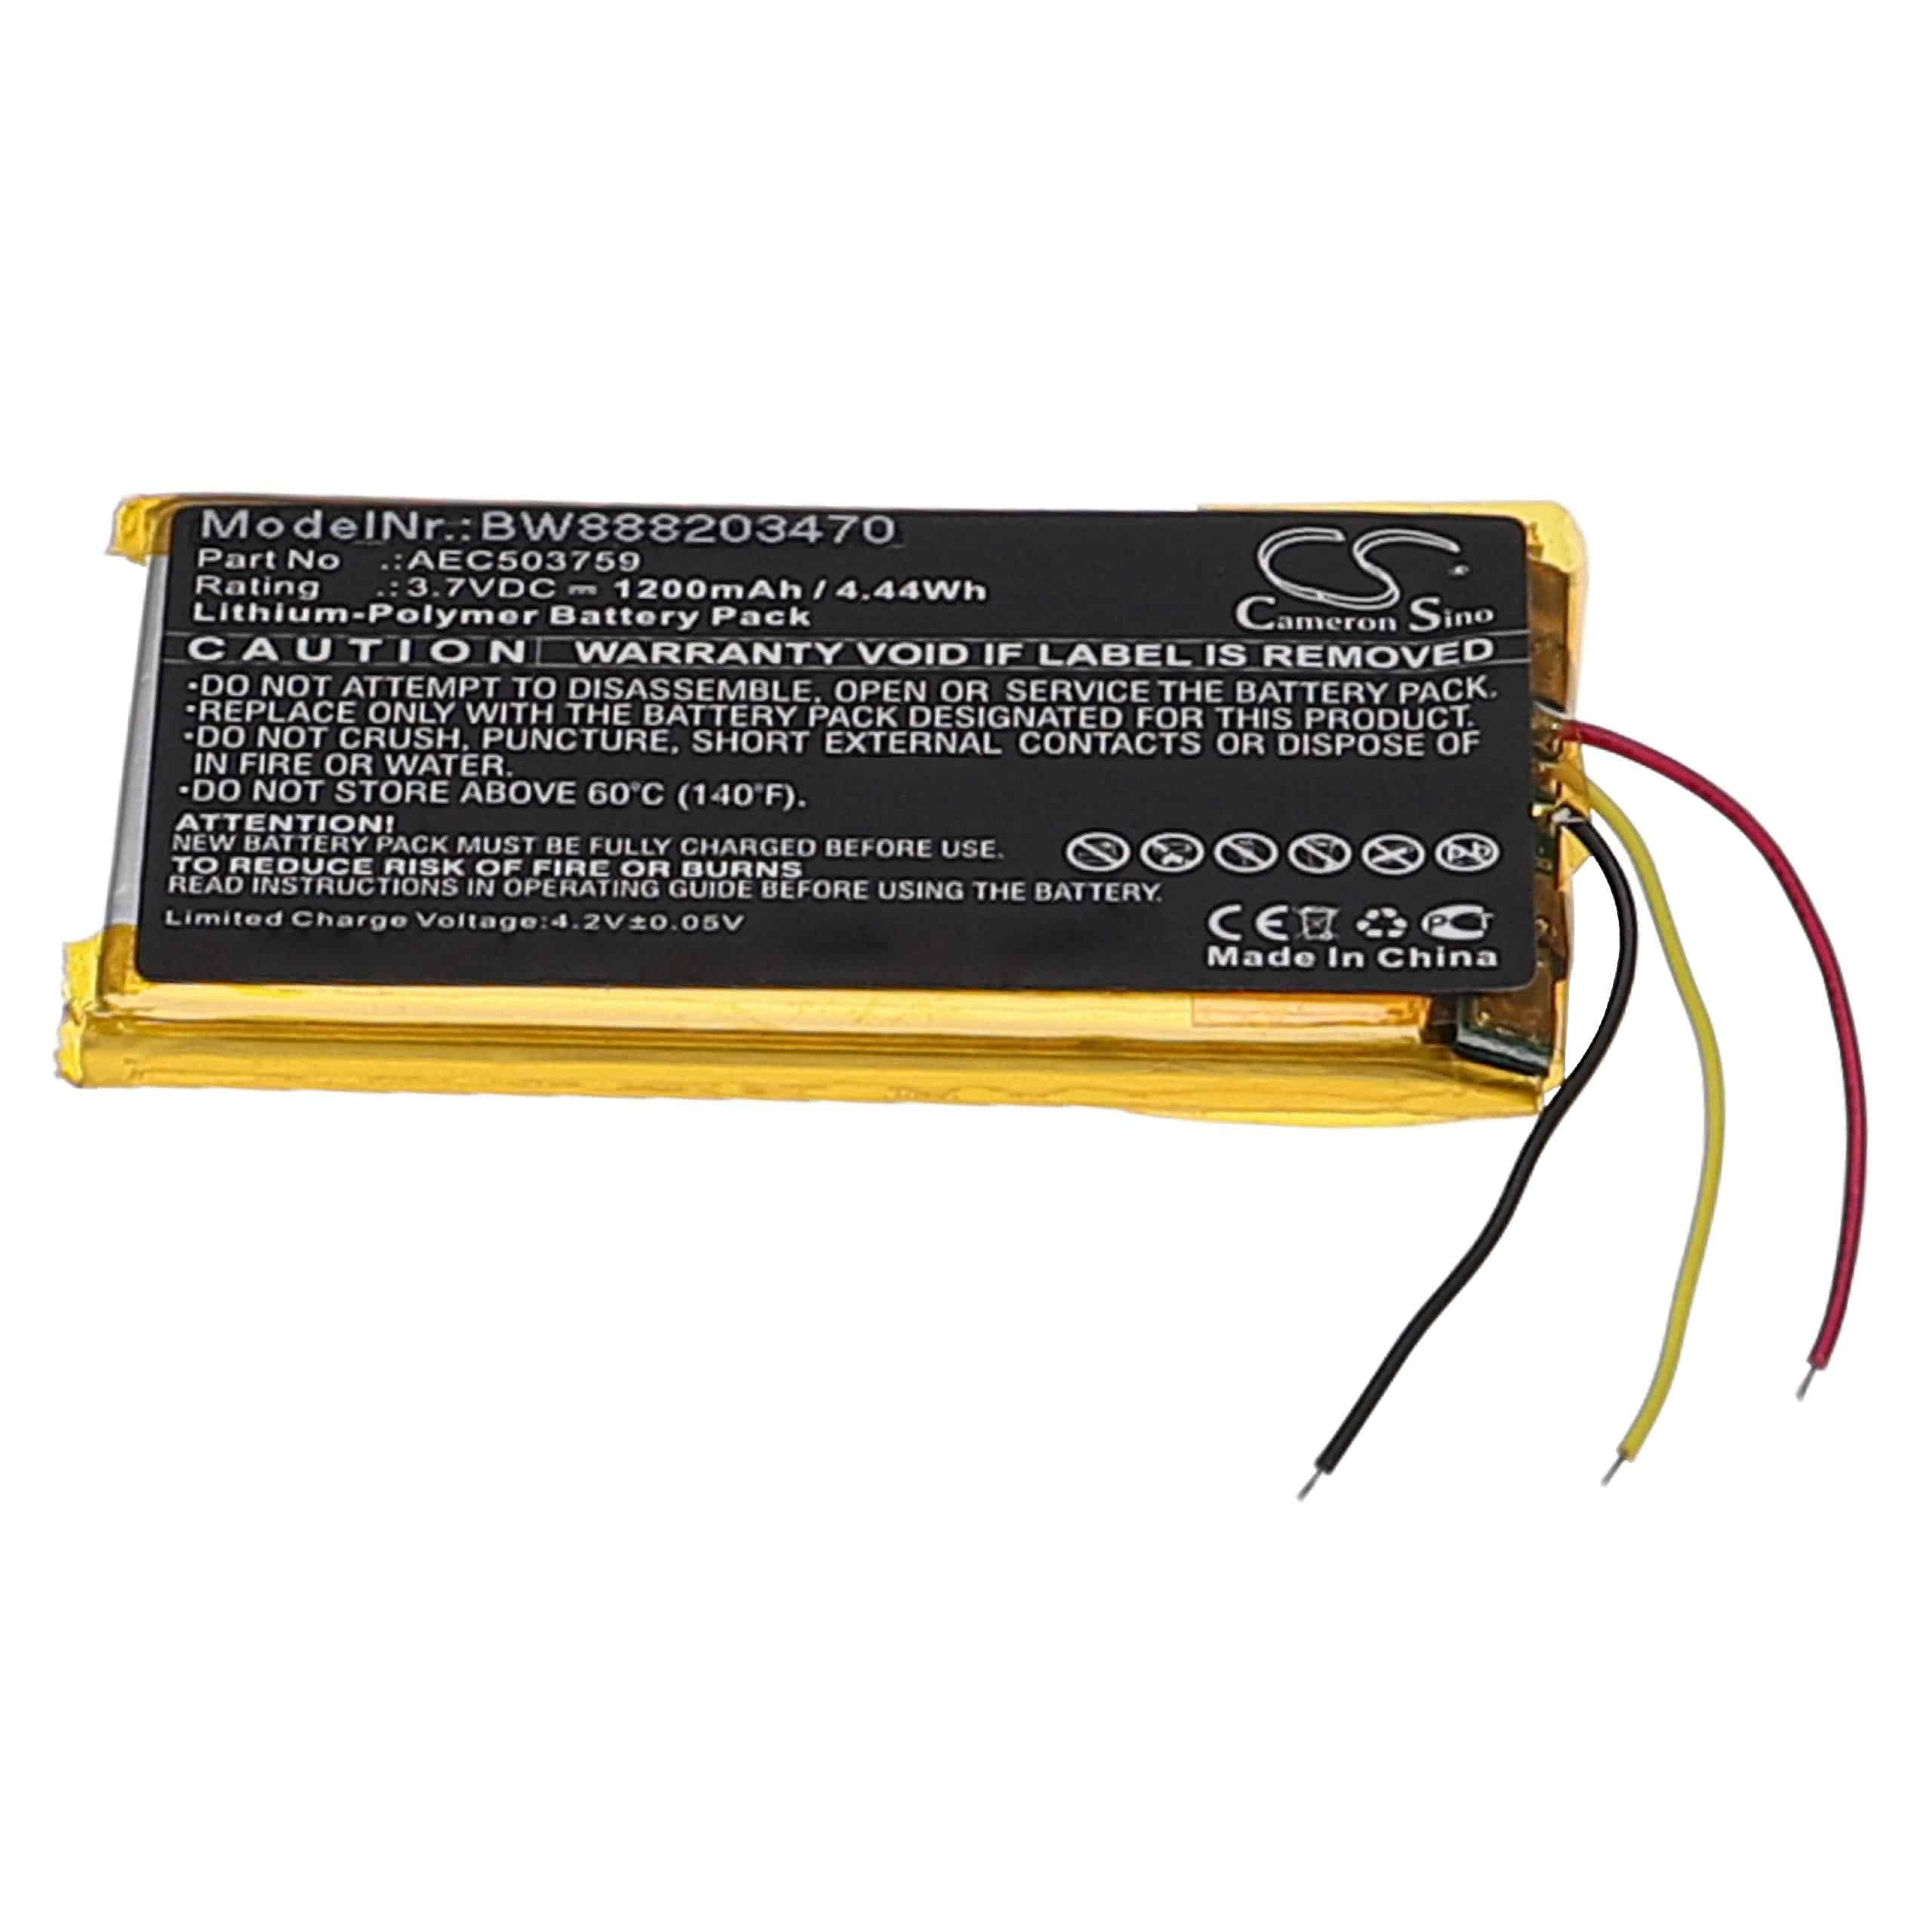 Batterie remplace SteelSeries AEC503759 pour casque audio - 1200mAh 3,7V Li-polymère